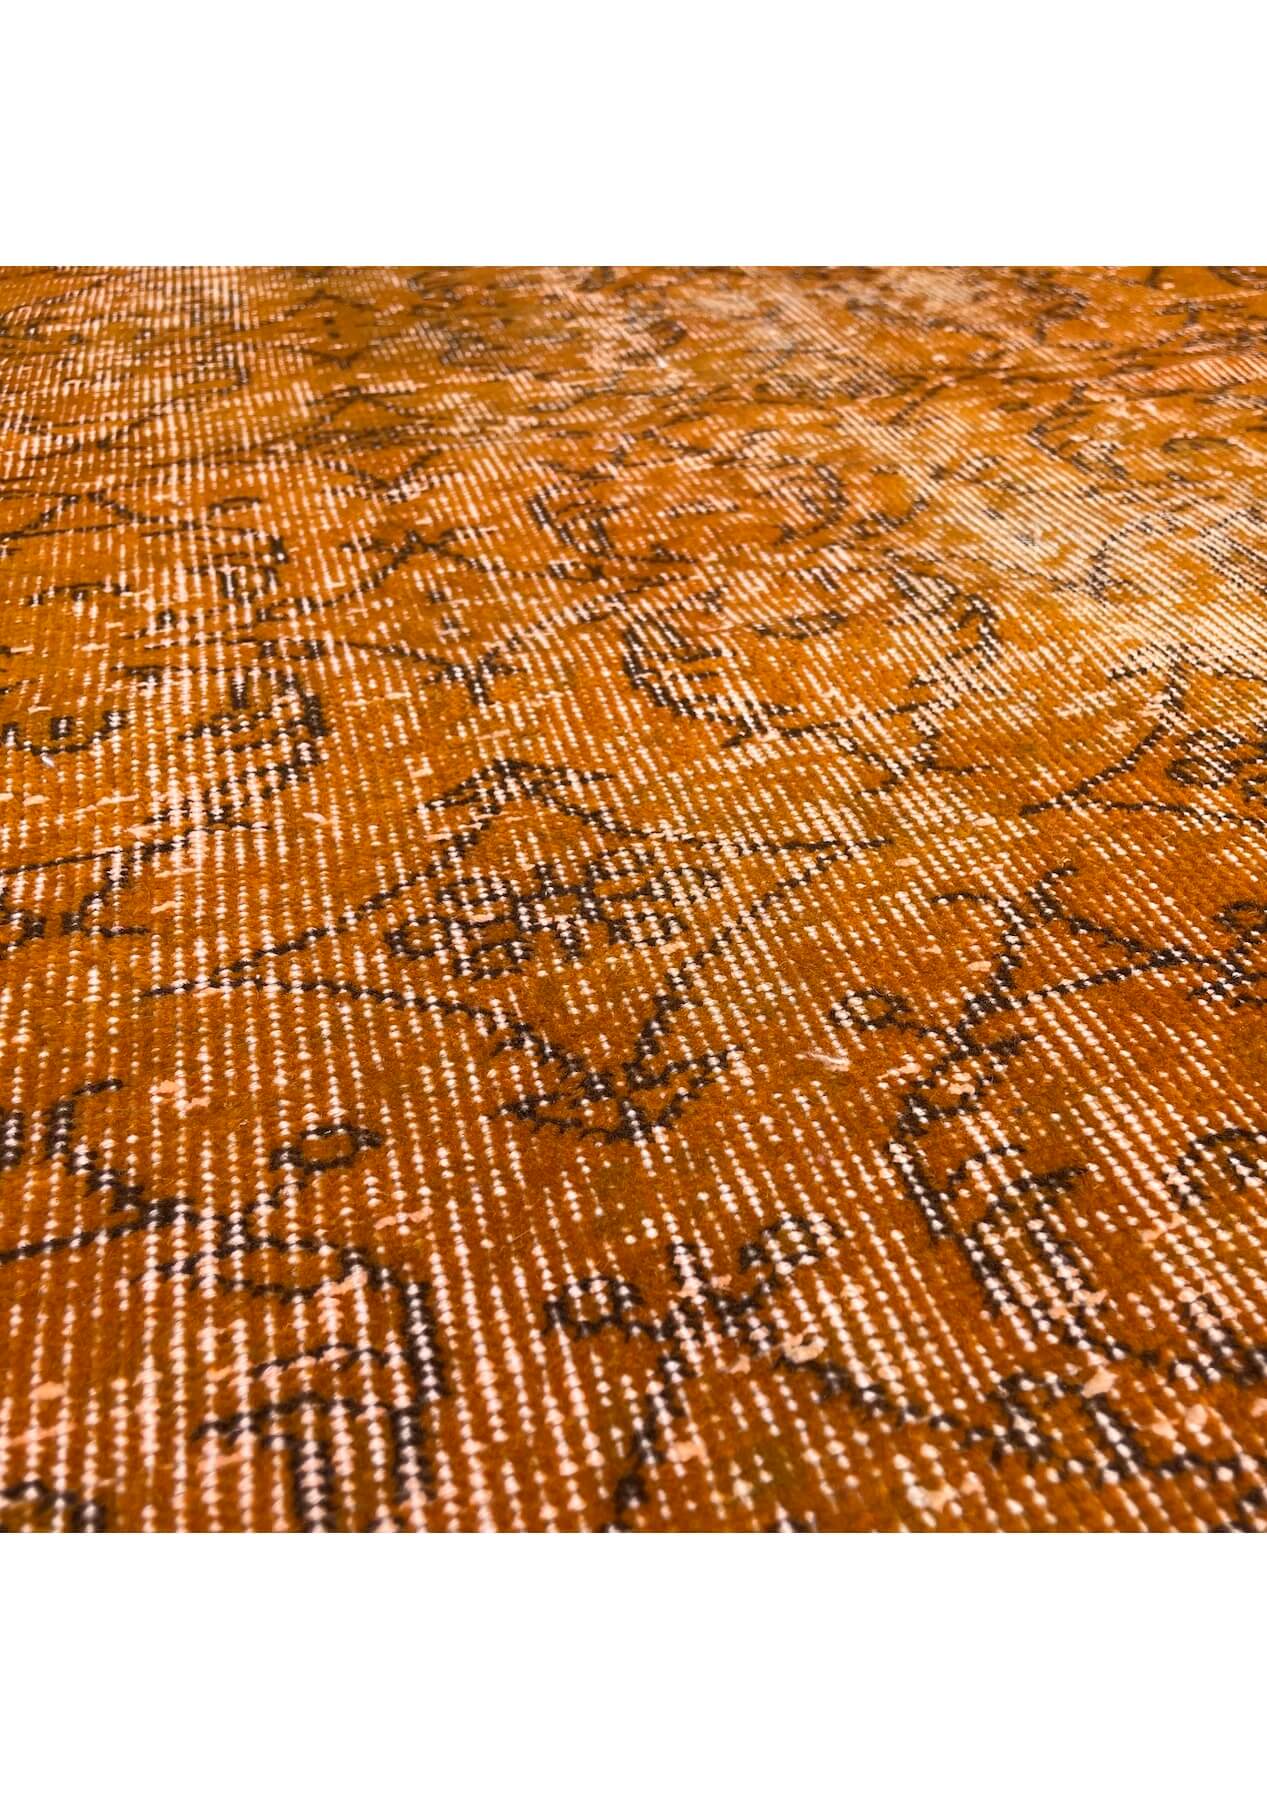 Lauryn - Vintage Orange Overdyed Rug - kudenrugs